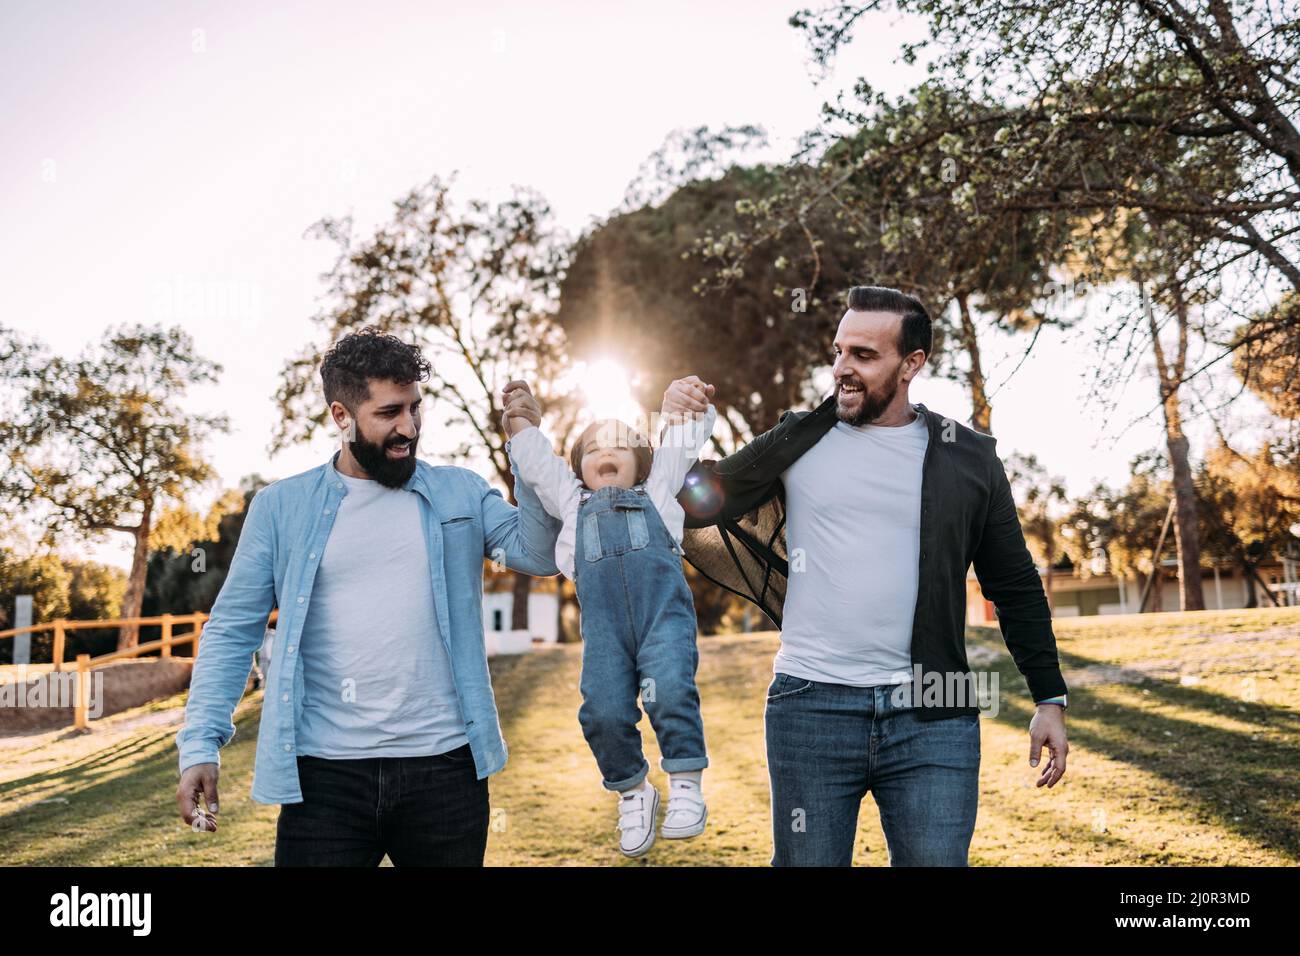 Un couple gay masculin lève leur petite fille qui rit avec joie. Concept de famille moderne et varié. Banque D'Images